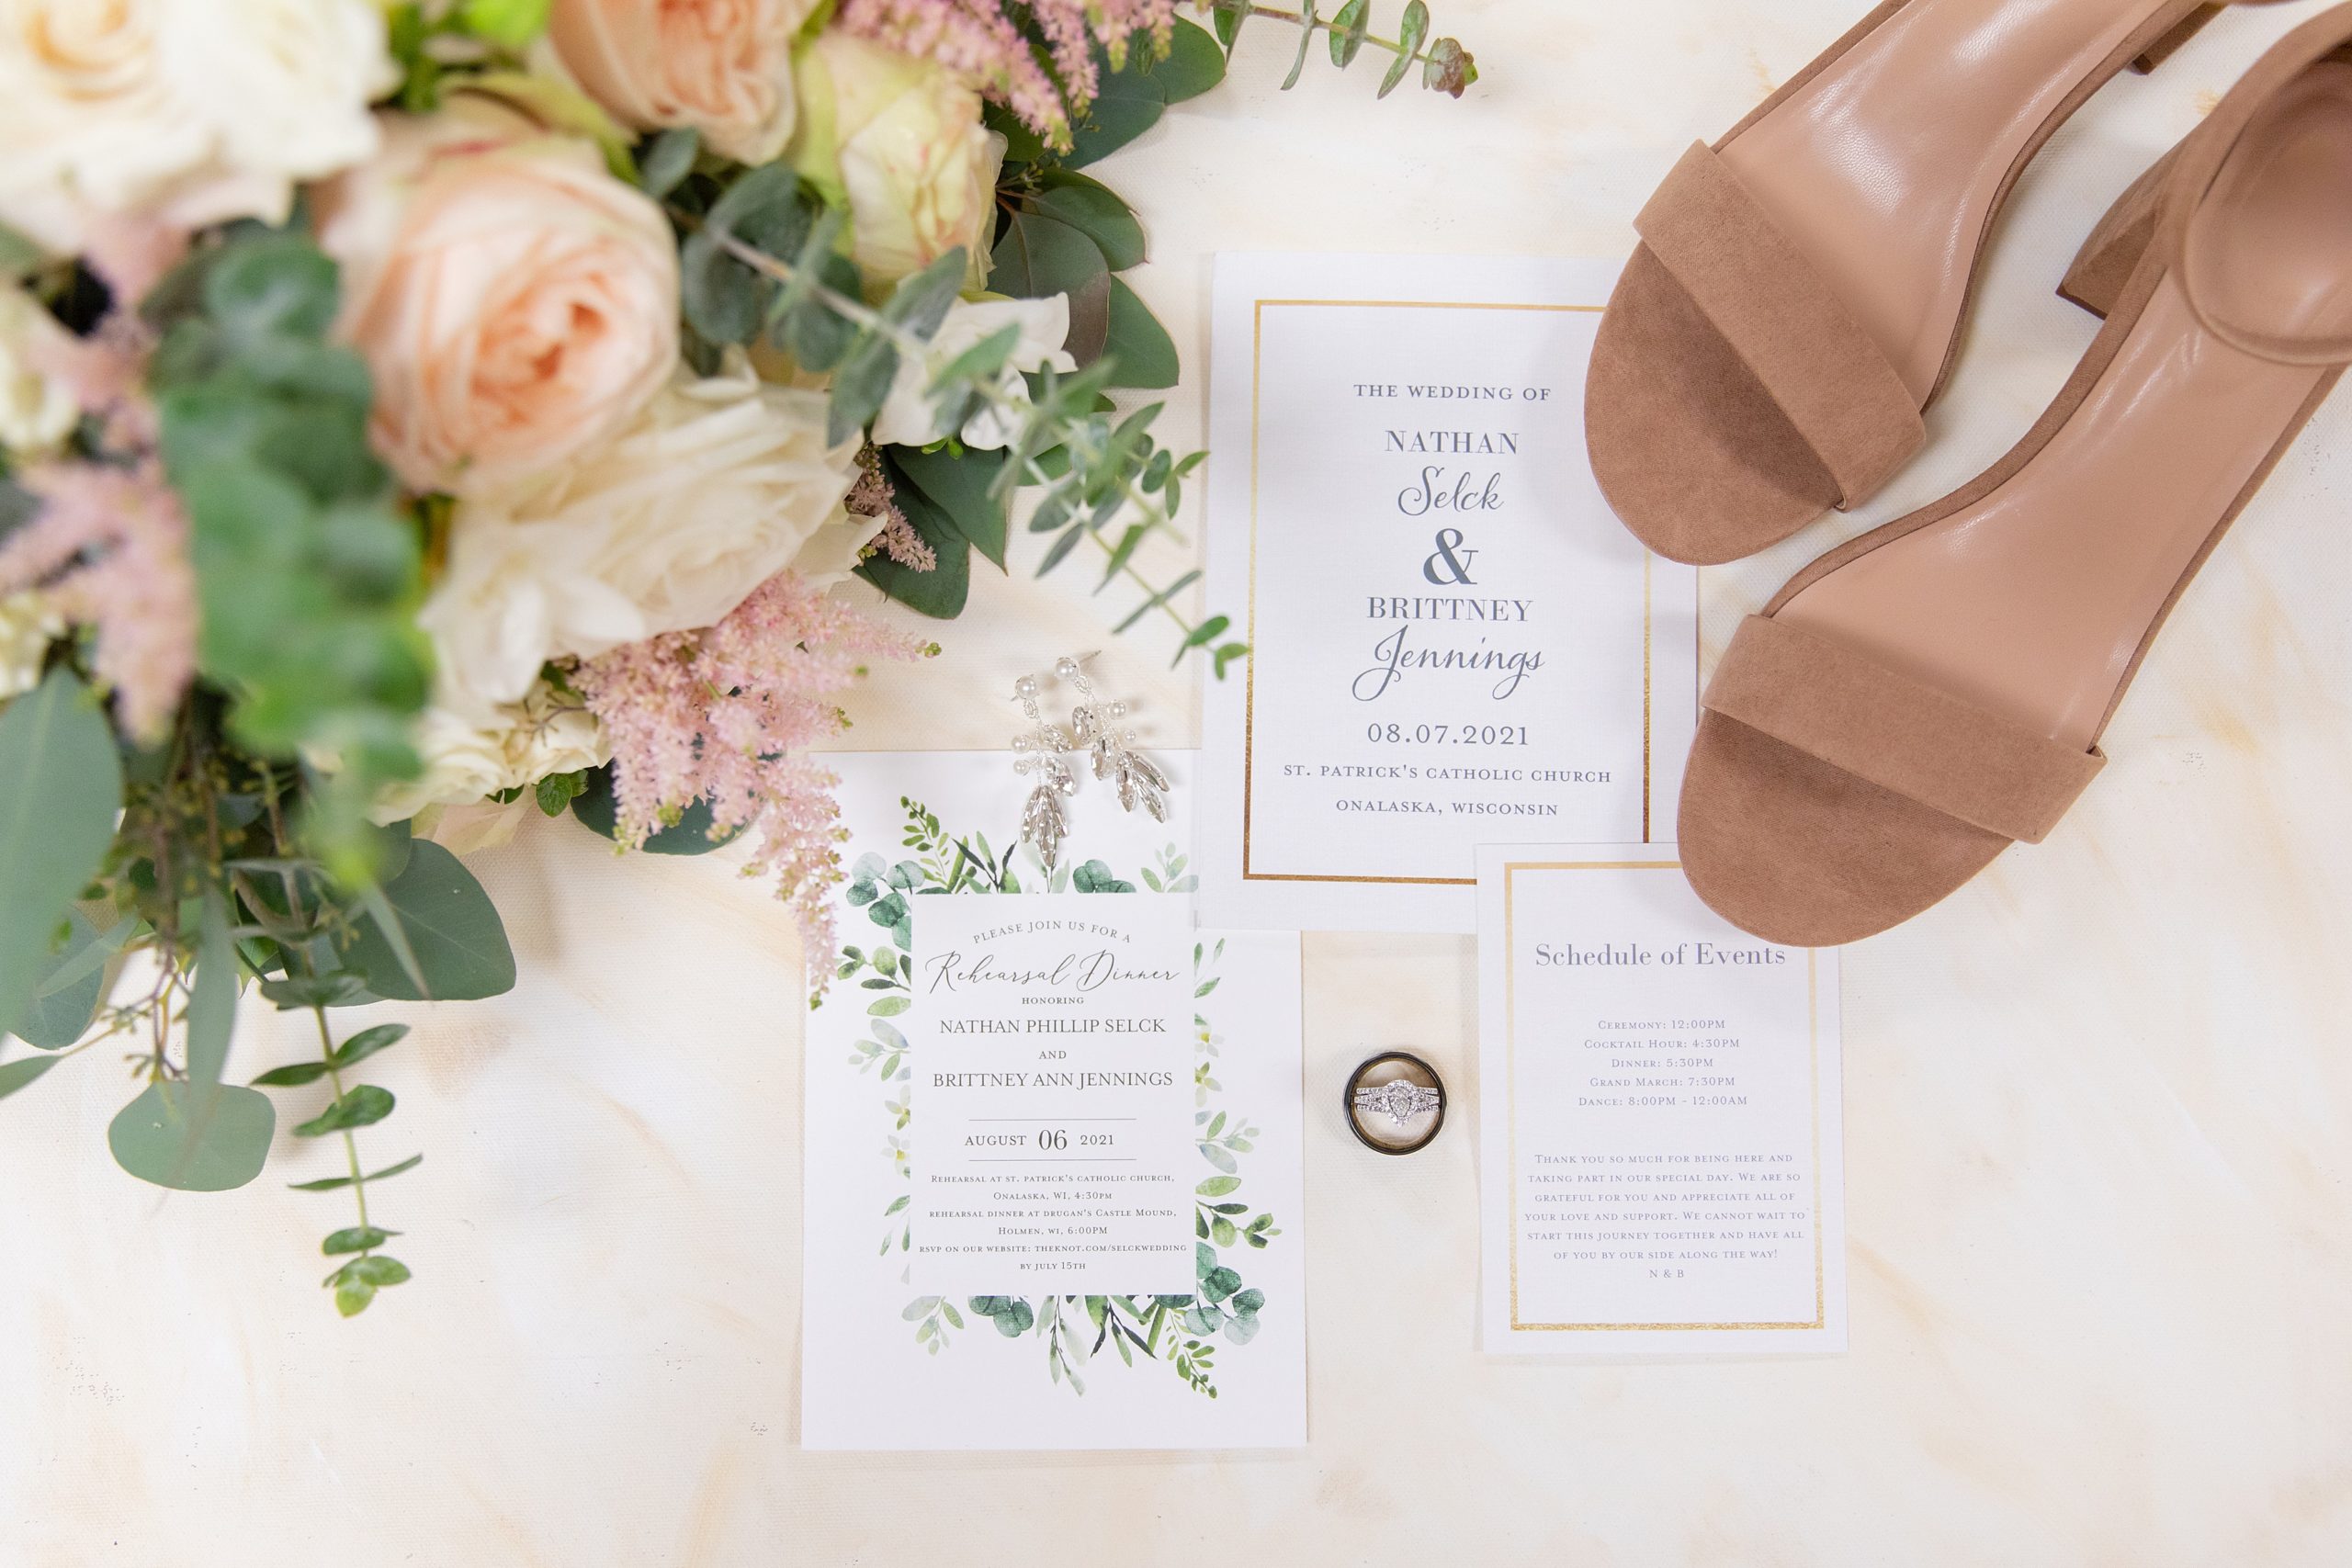 wedding details checklist